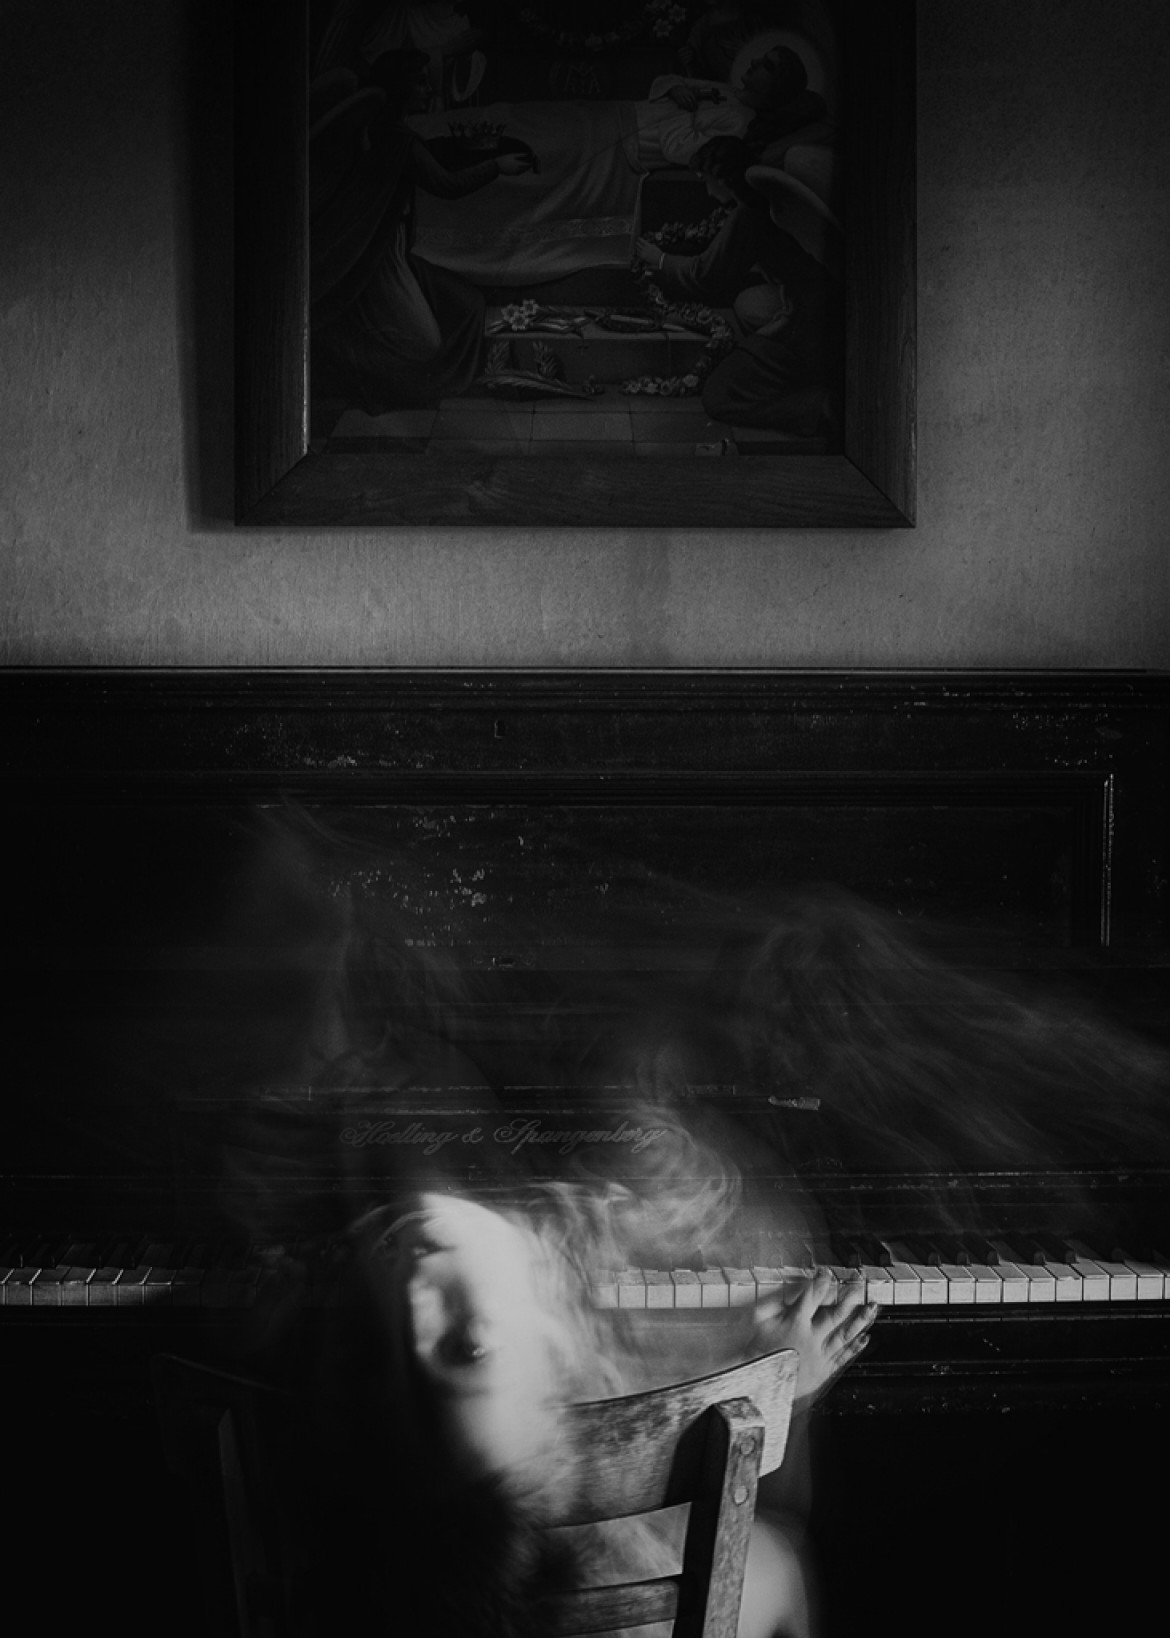 fot. Rafał Kijas, "Music Lesson", wyróżnienie w kategorii Fine Art